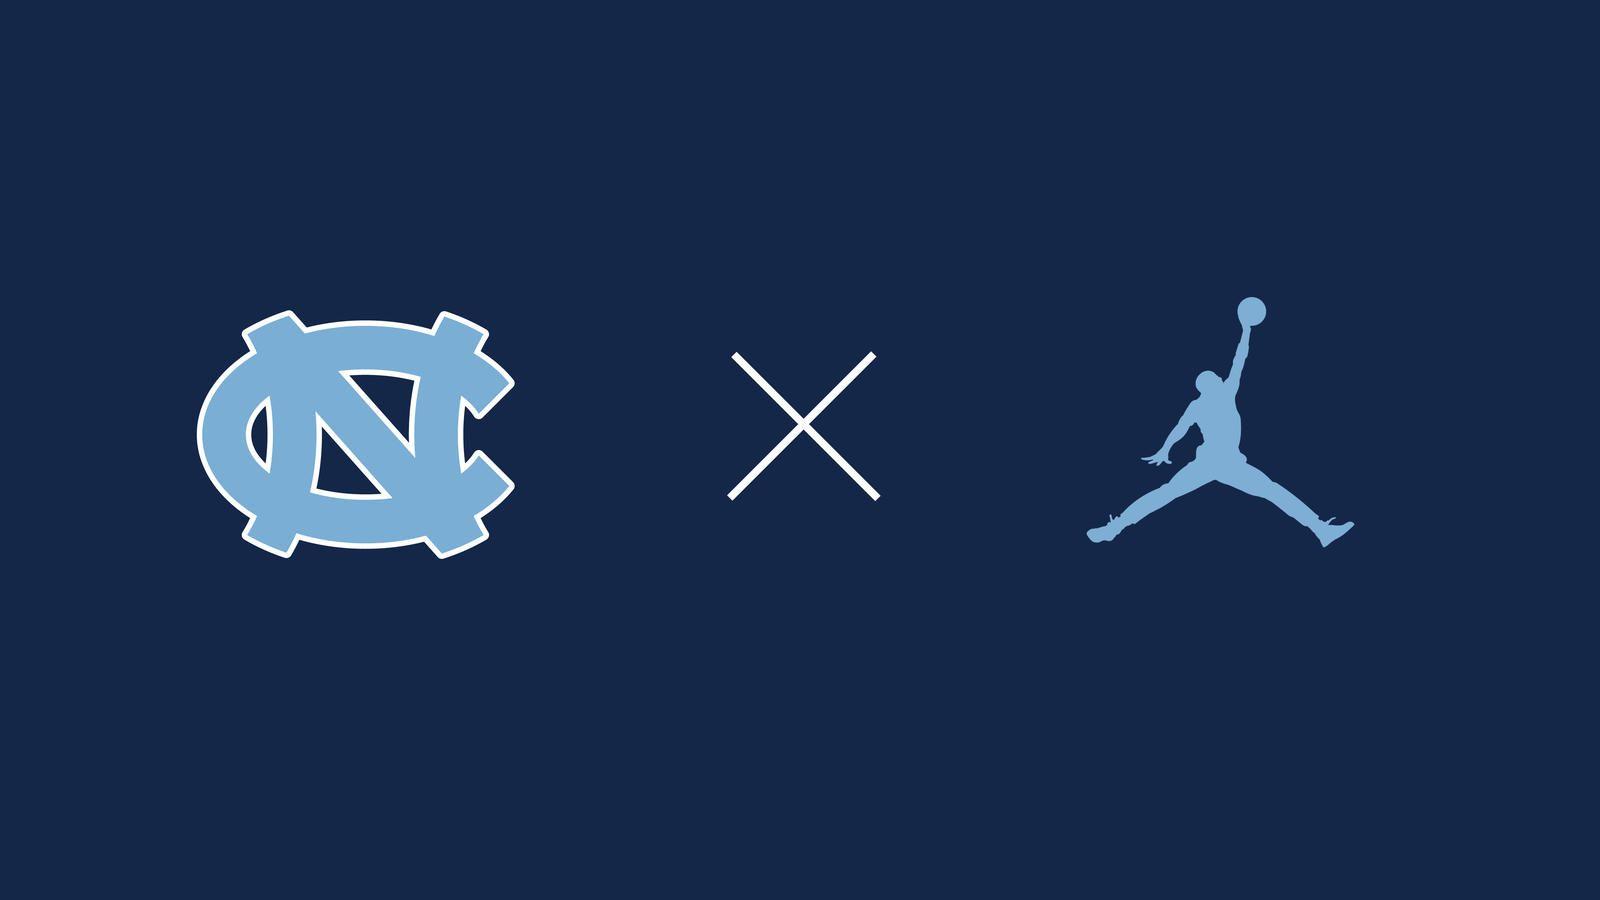 Carolina Blue Jordan Logo - Jordan Brand Expands Partnership with UNC to Include Football